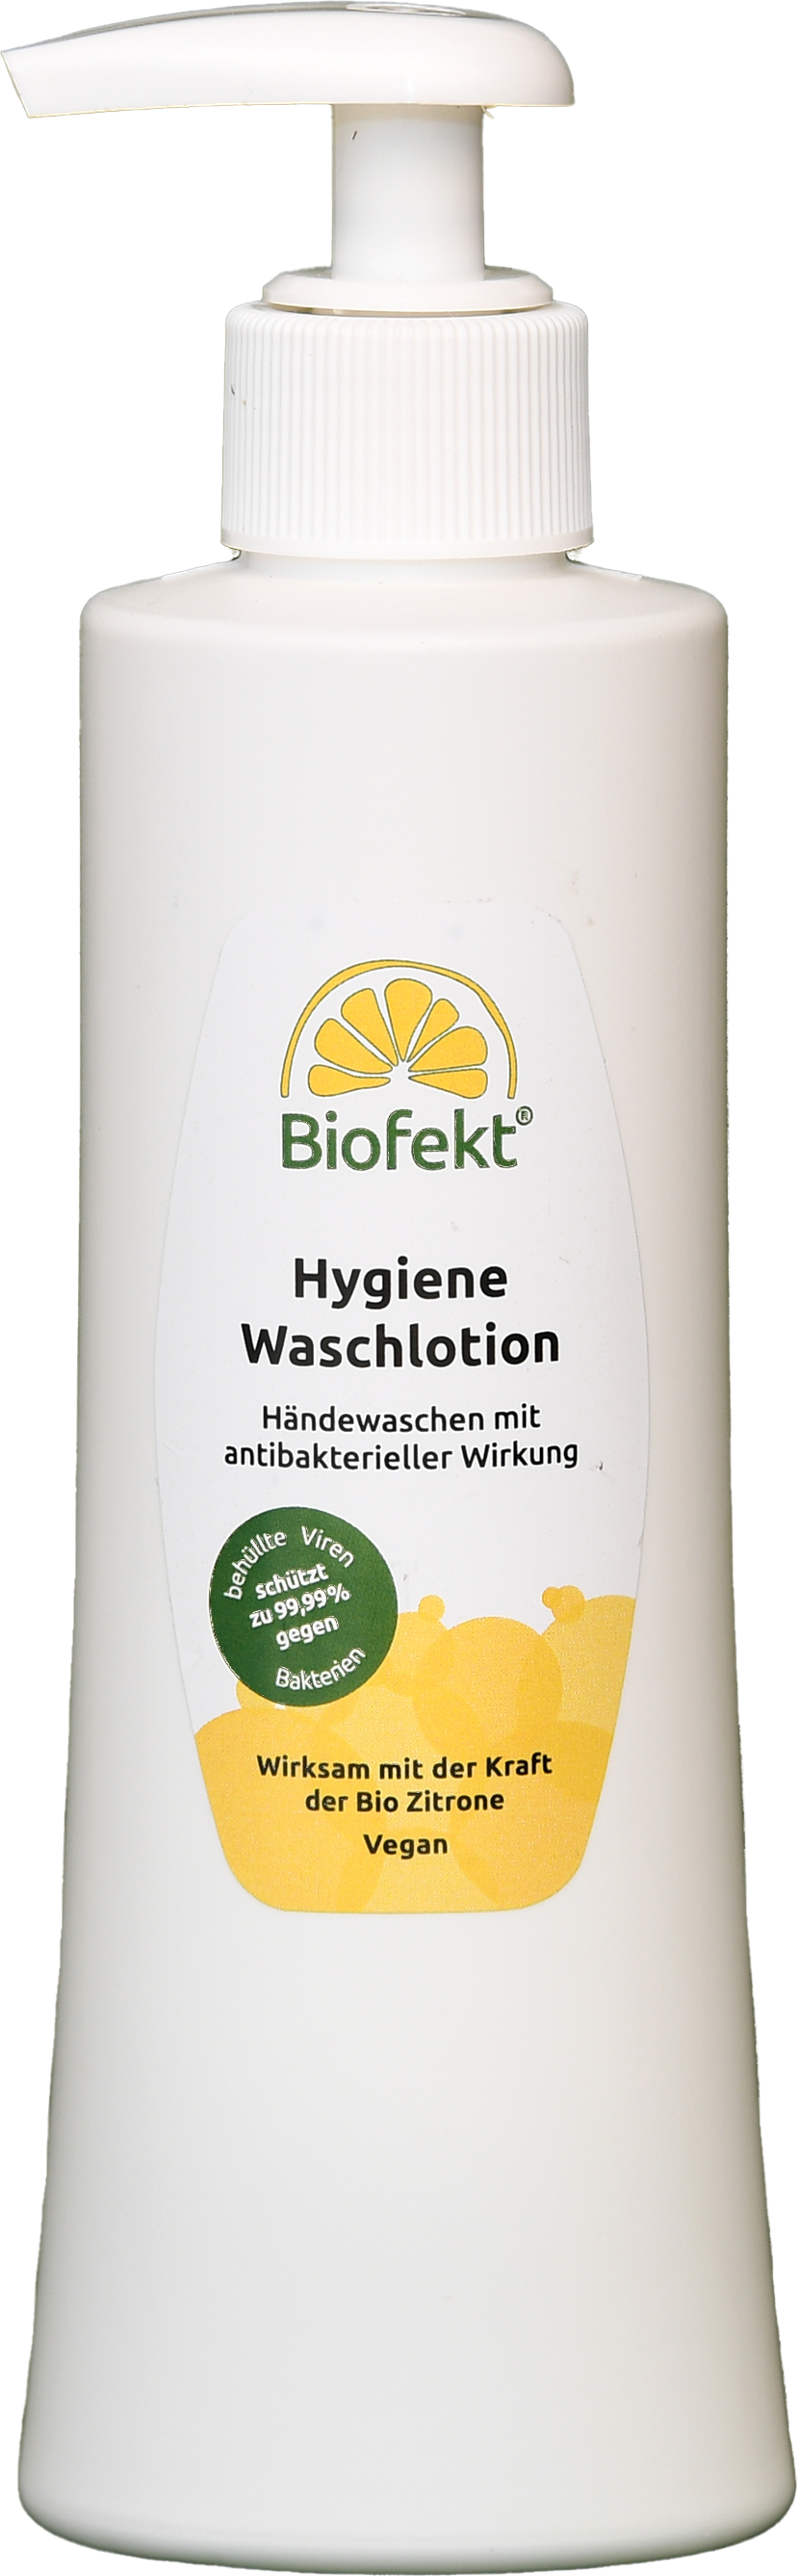 hygiene-waschlotion